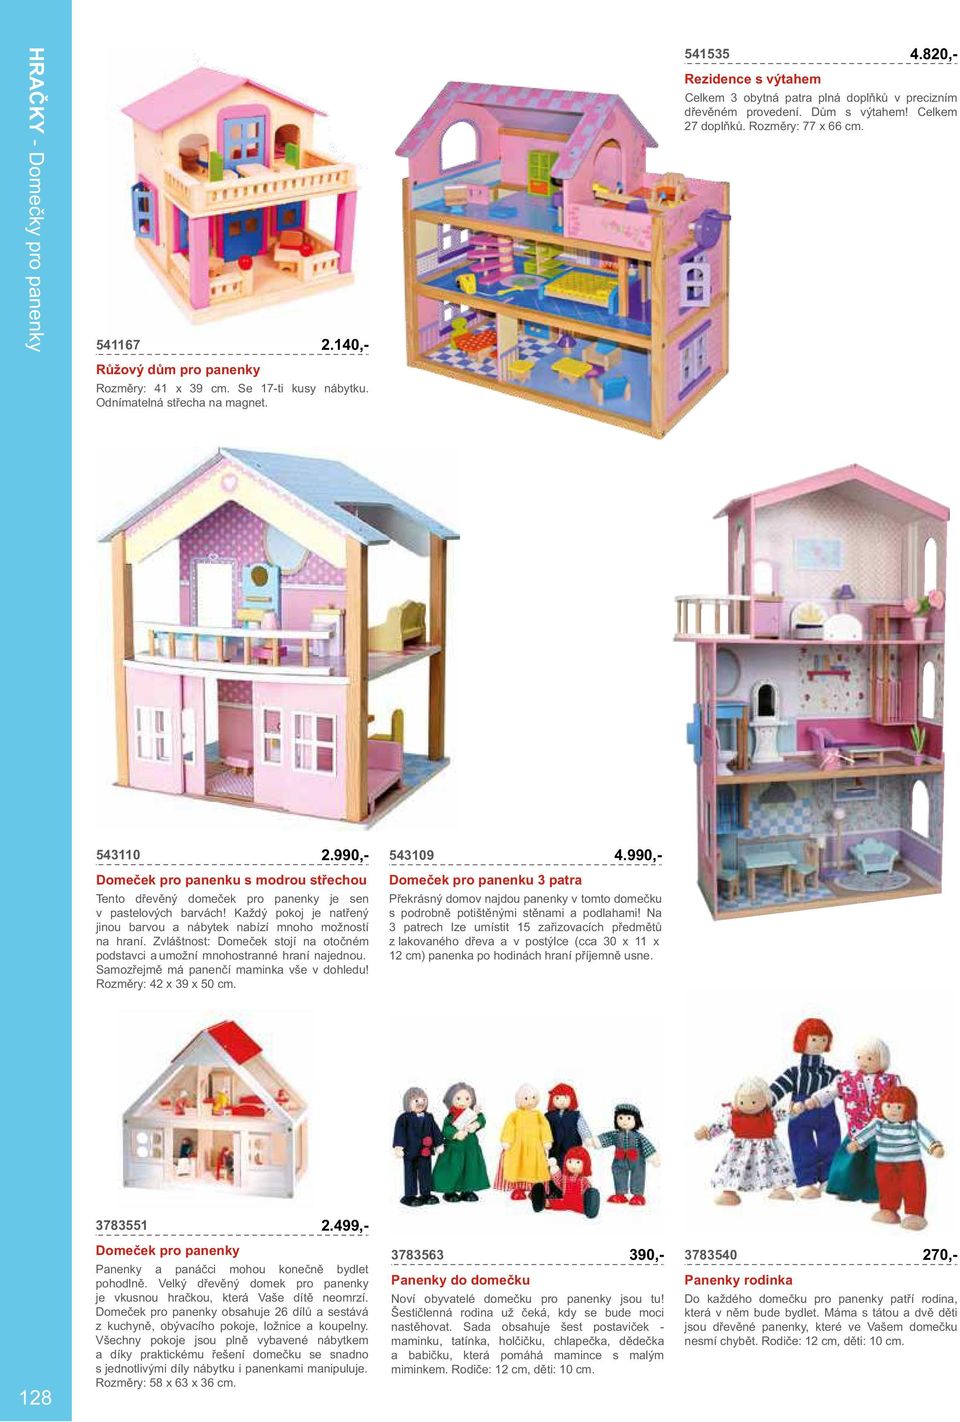 990,- Domeček pro panenku s modrou střechou Tento dřevěný domeček pro panenky je sen v pastelových barvách! Každý pokoj je natřený jinou barvou a nábytek nabízí mnoho možností na hraní.